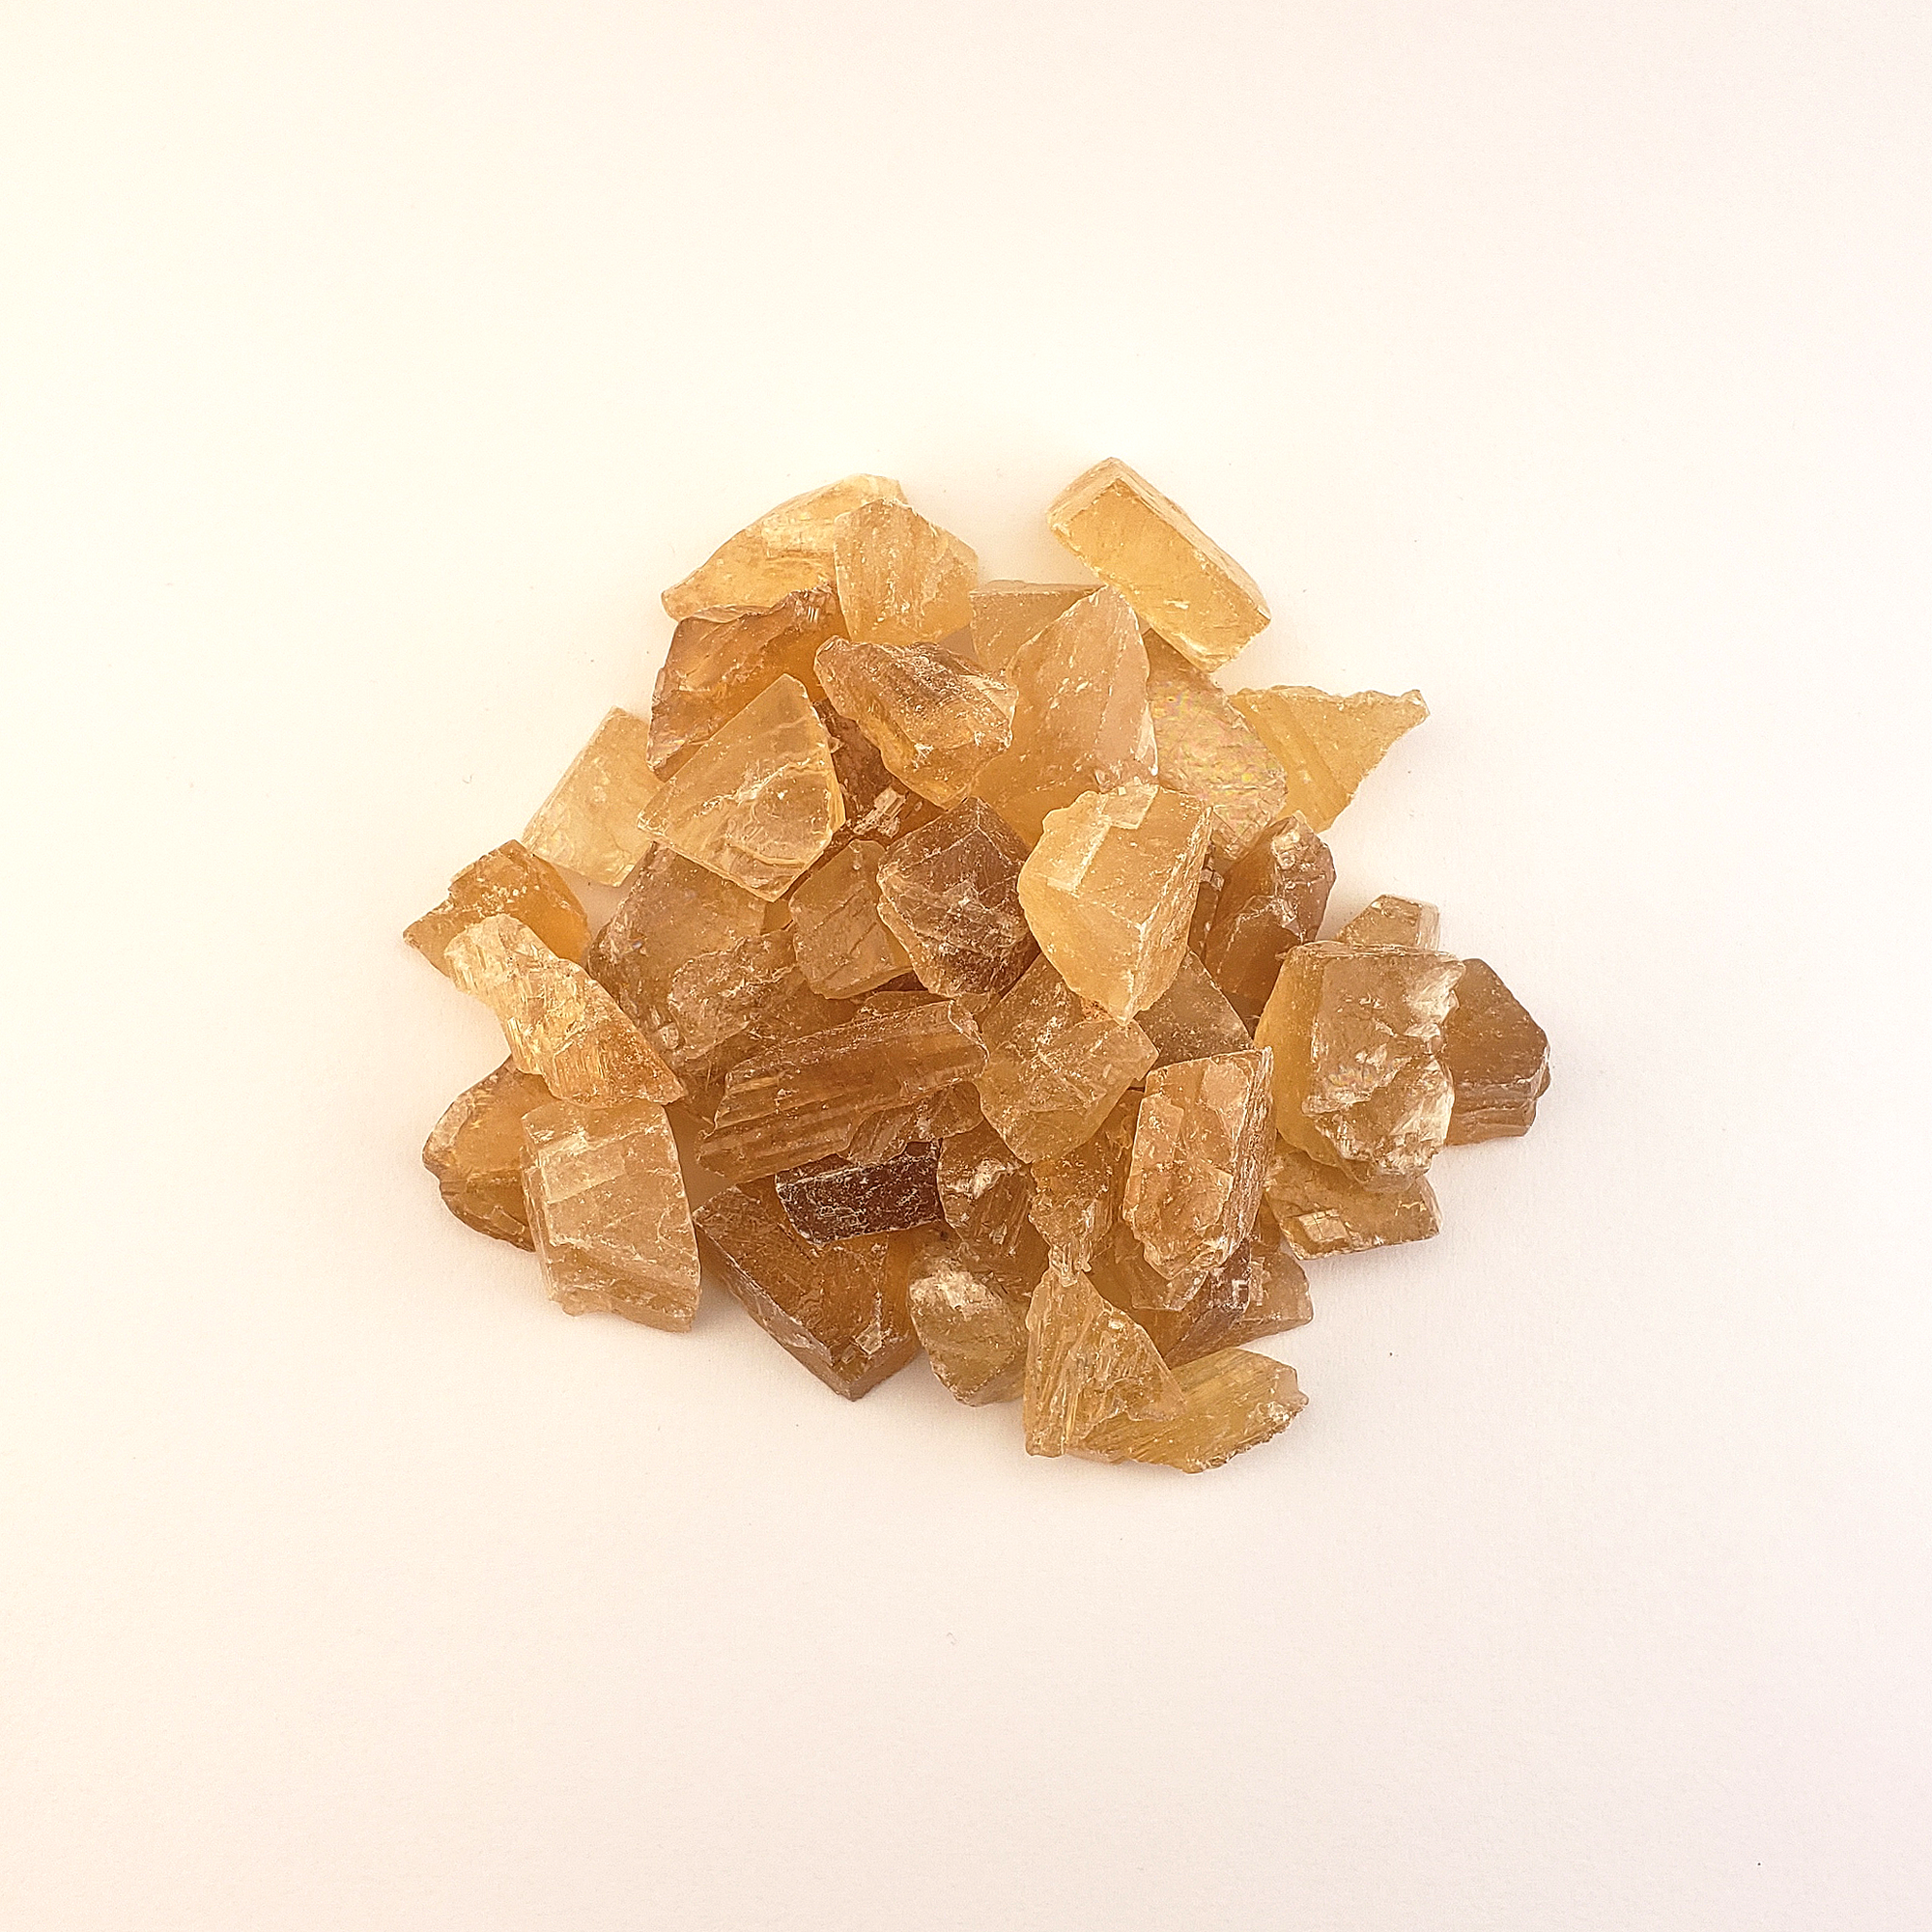 Honey Calcite Natural Raw Crystals Rough Gemstones - 3 Mini Stones